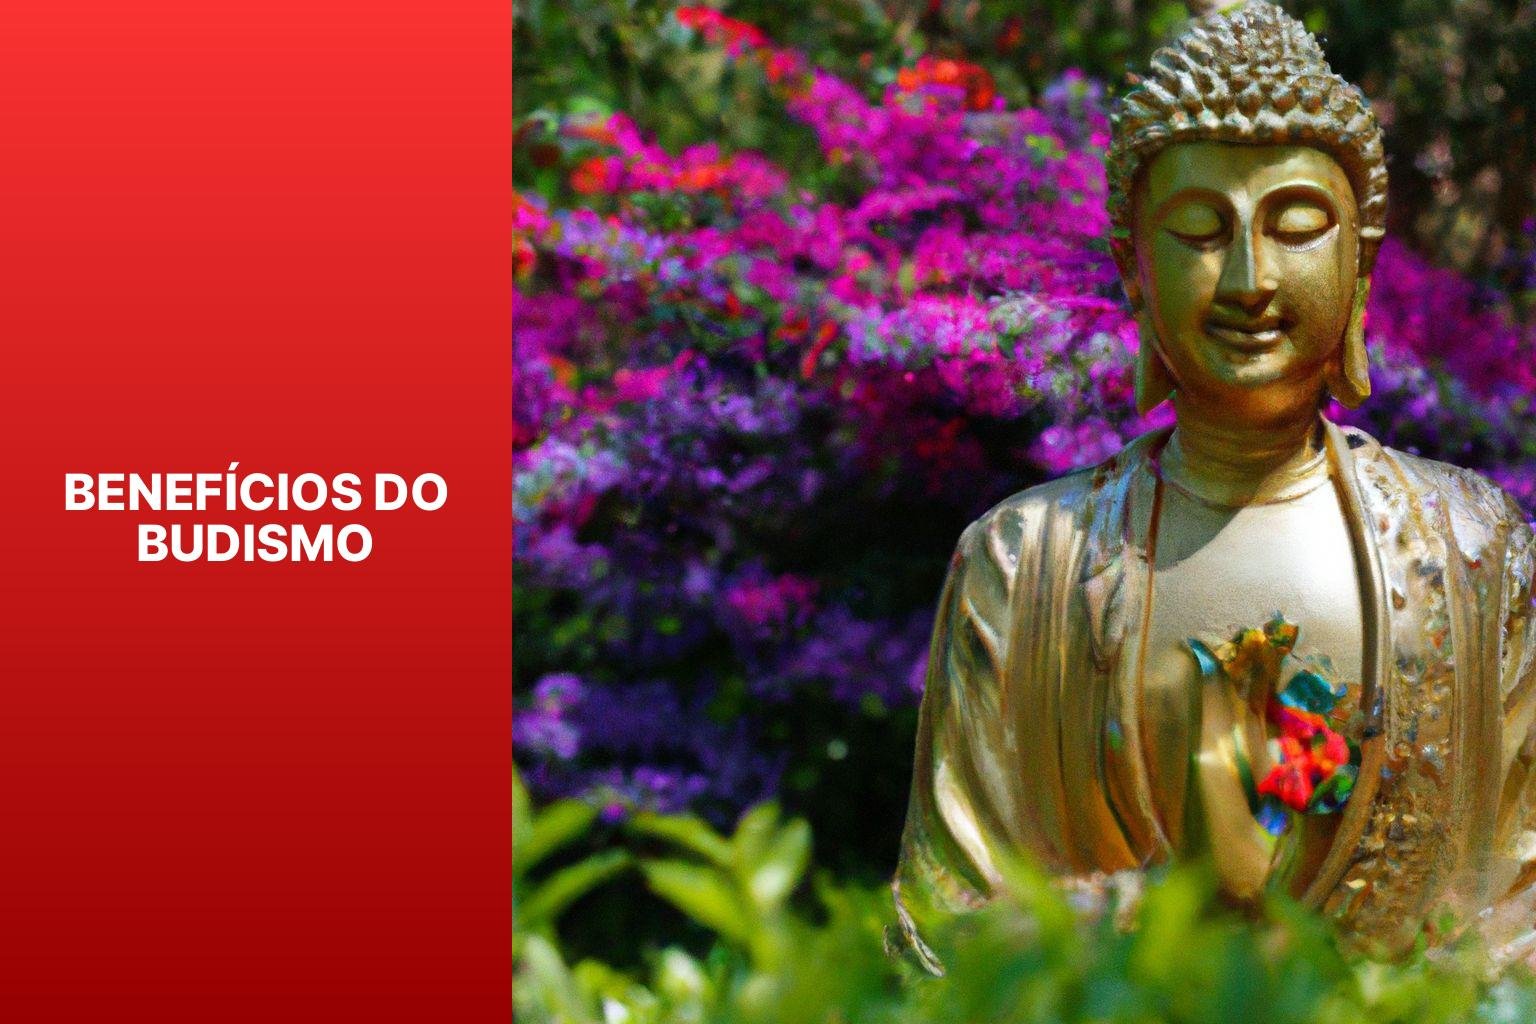 Benefícios do Budismo - Budismo Ribeirão Preto 